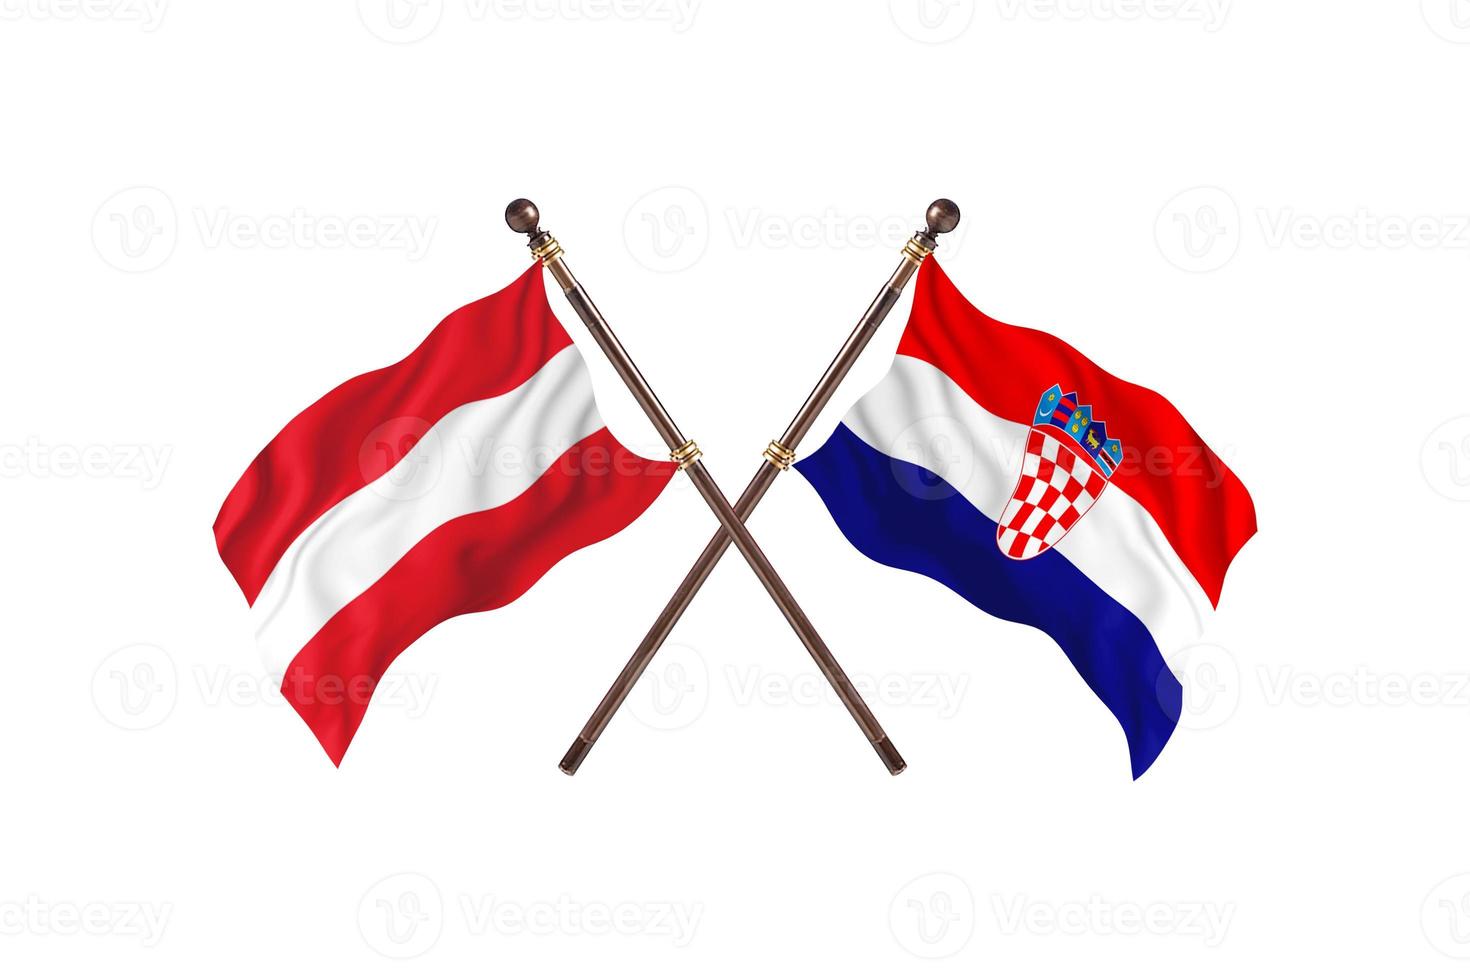 Oostenrijk versus Kroatië twee land vlaggen foto